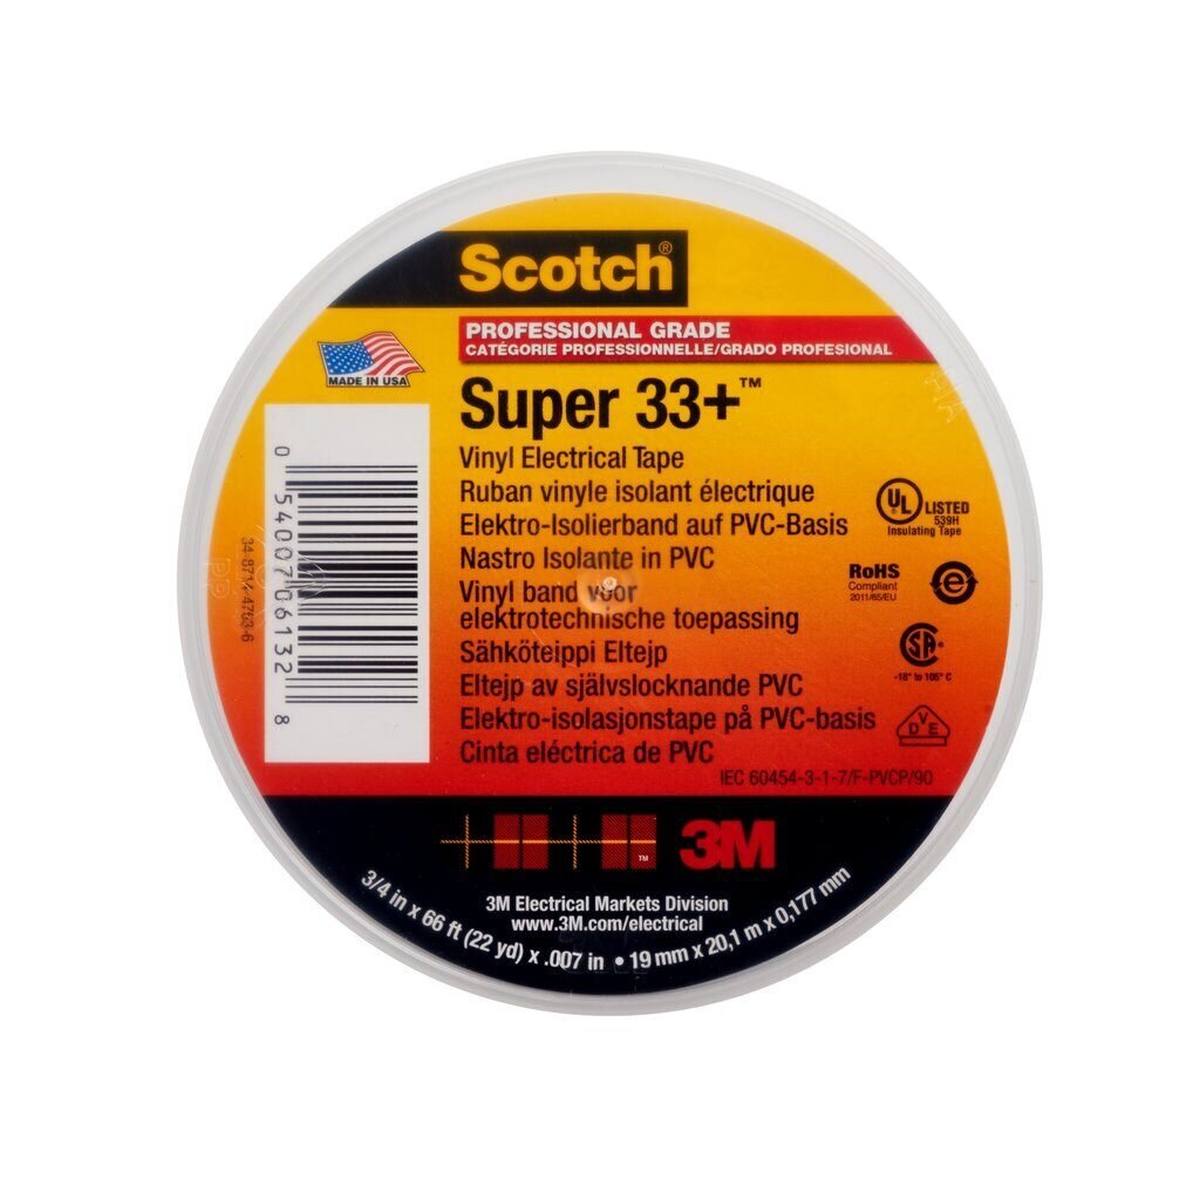 3M Scotch Super 33+ vinyl electrical insulating tape, black, 19 mm x 20 m, 0.18 mm